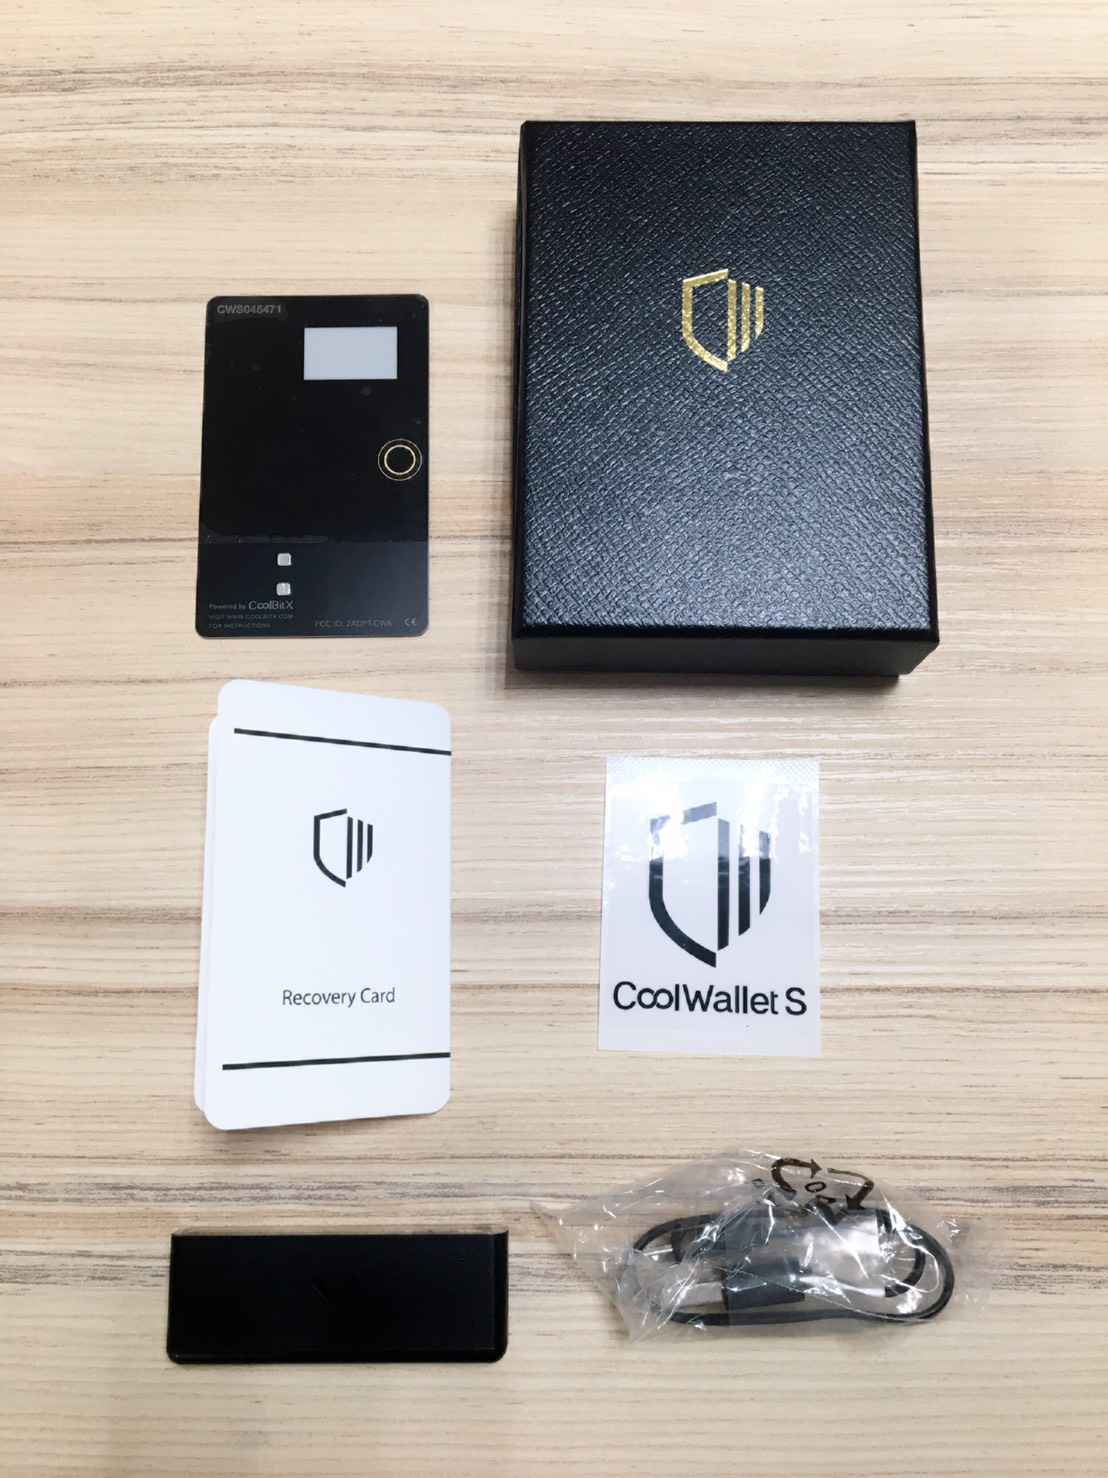 【工具教學】MIT製造安全、便利的硬體錢包-CoolWallet S